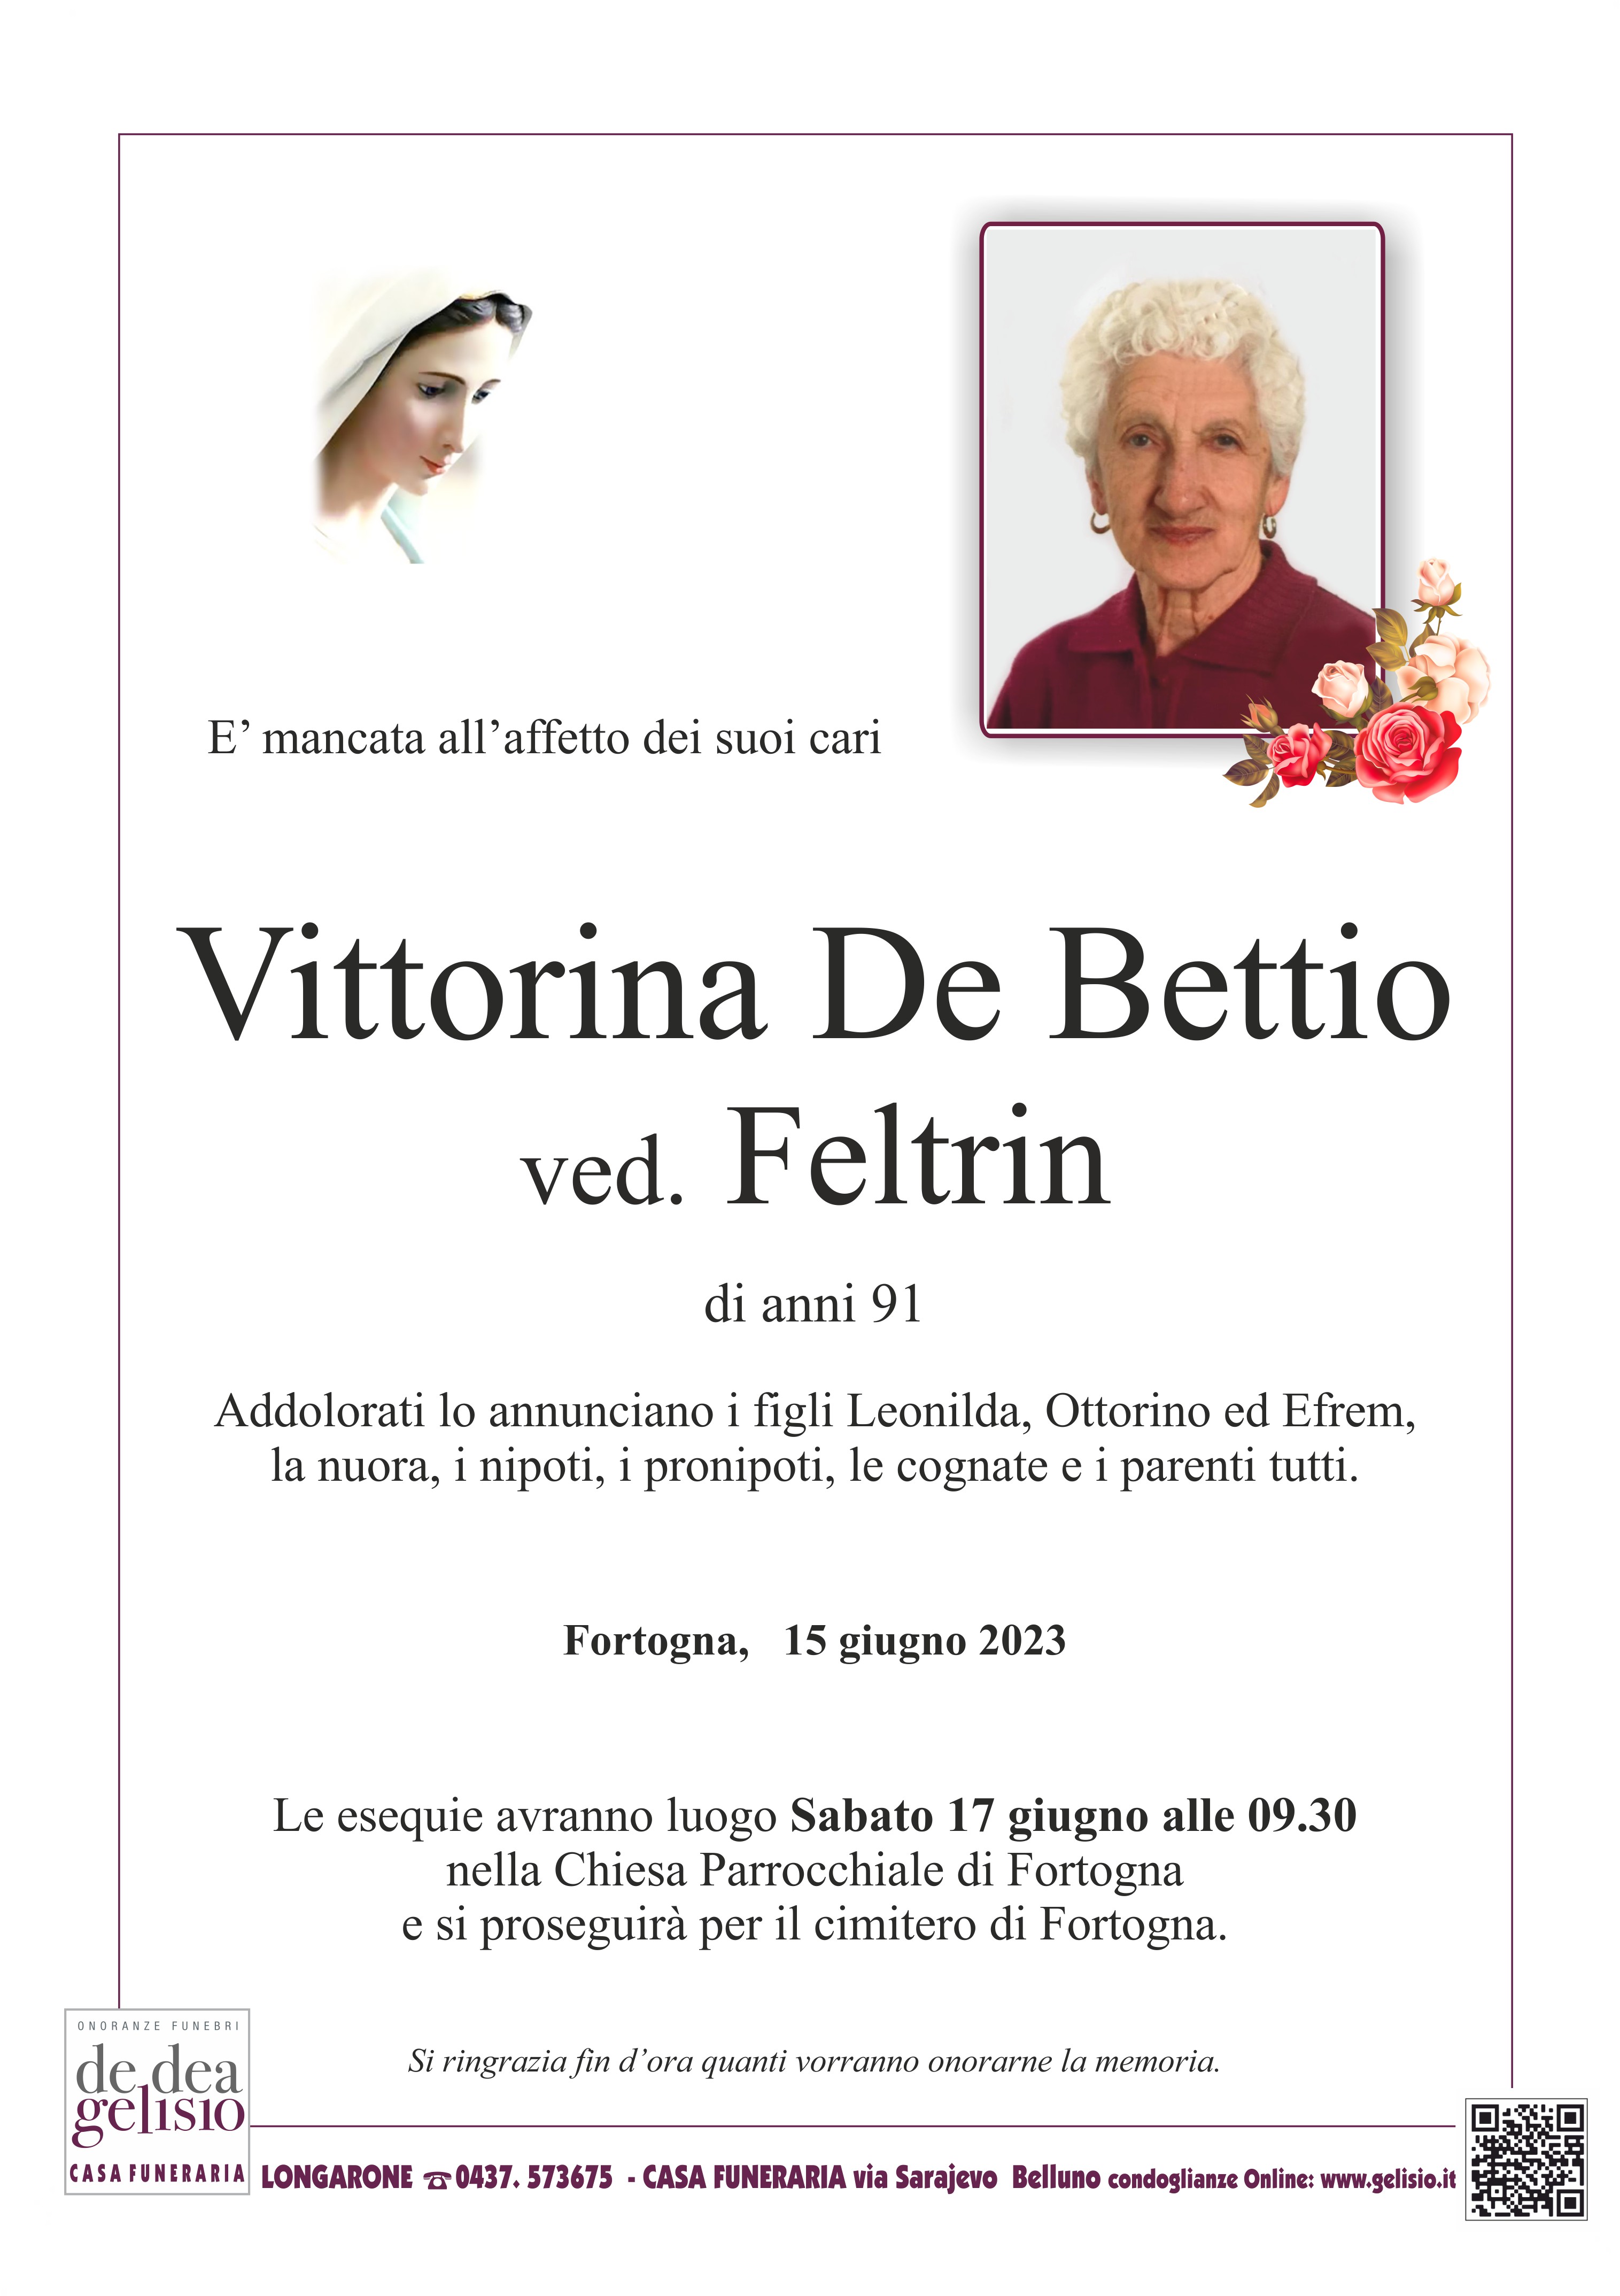 De Bettio Vittorina